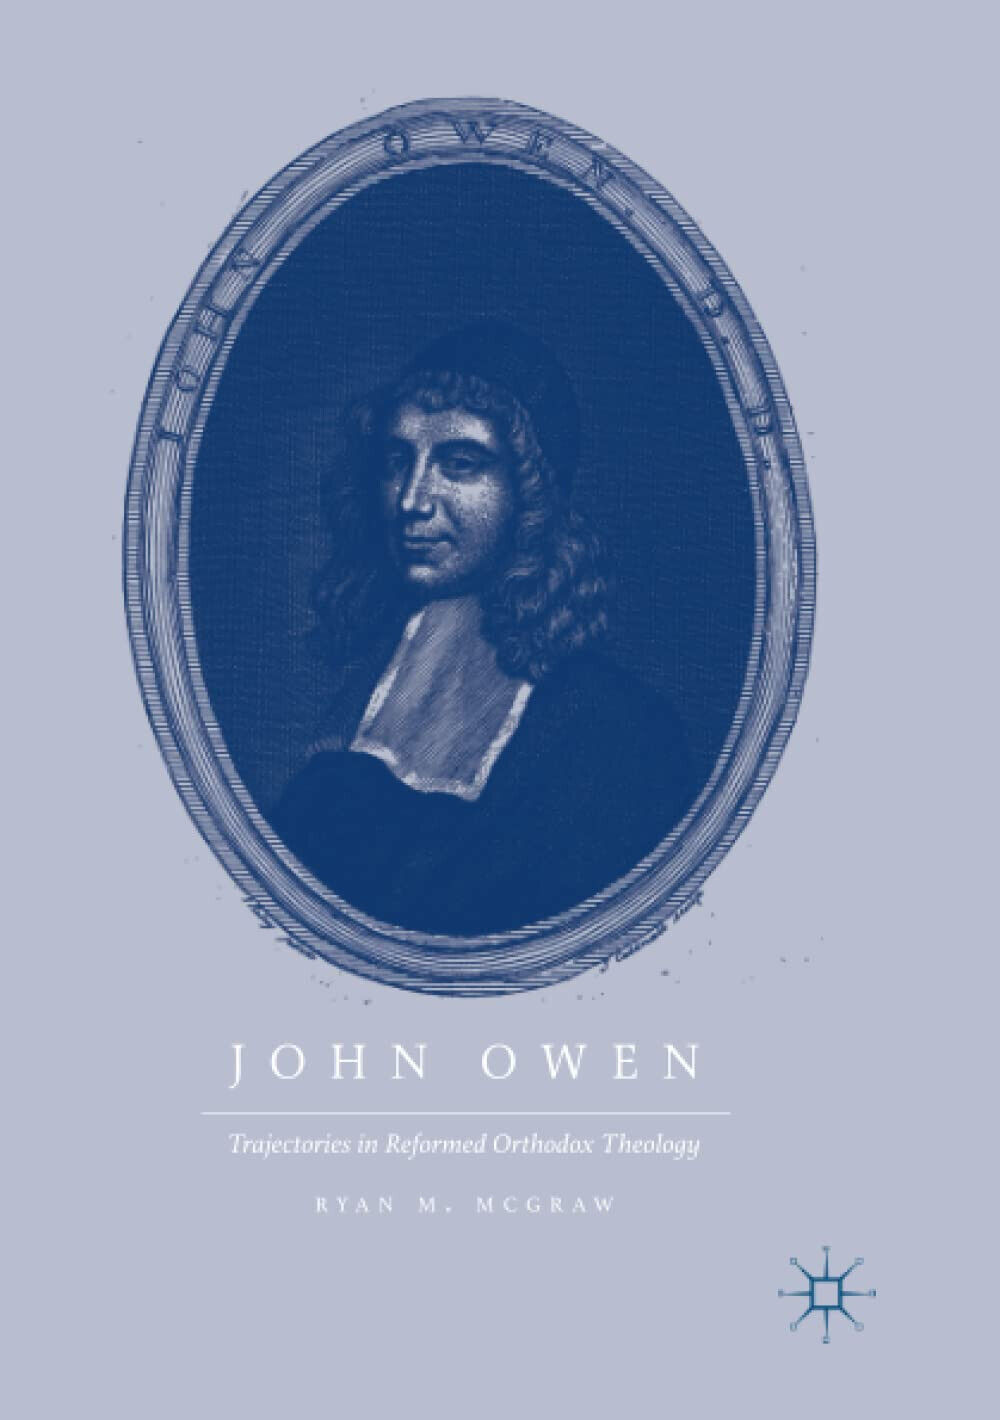 John Owen - Ryan M. Mcgraw - Springer, 2018